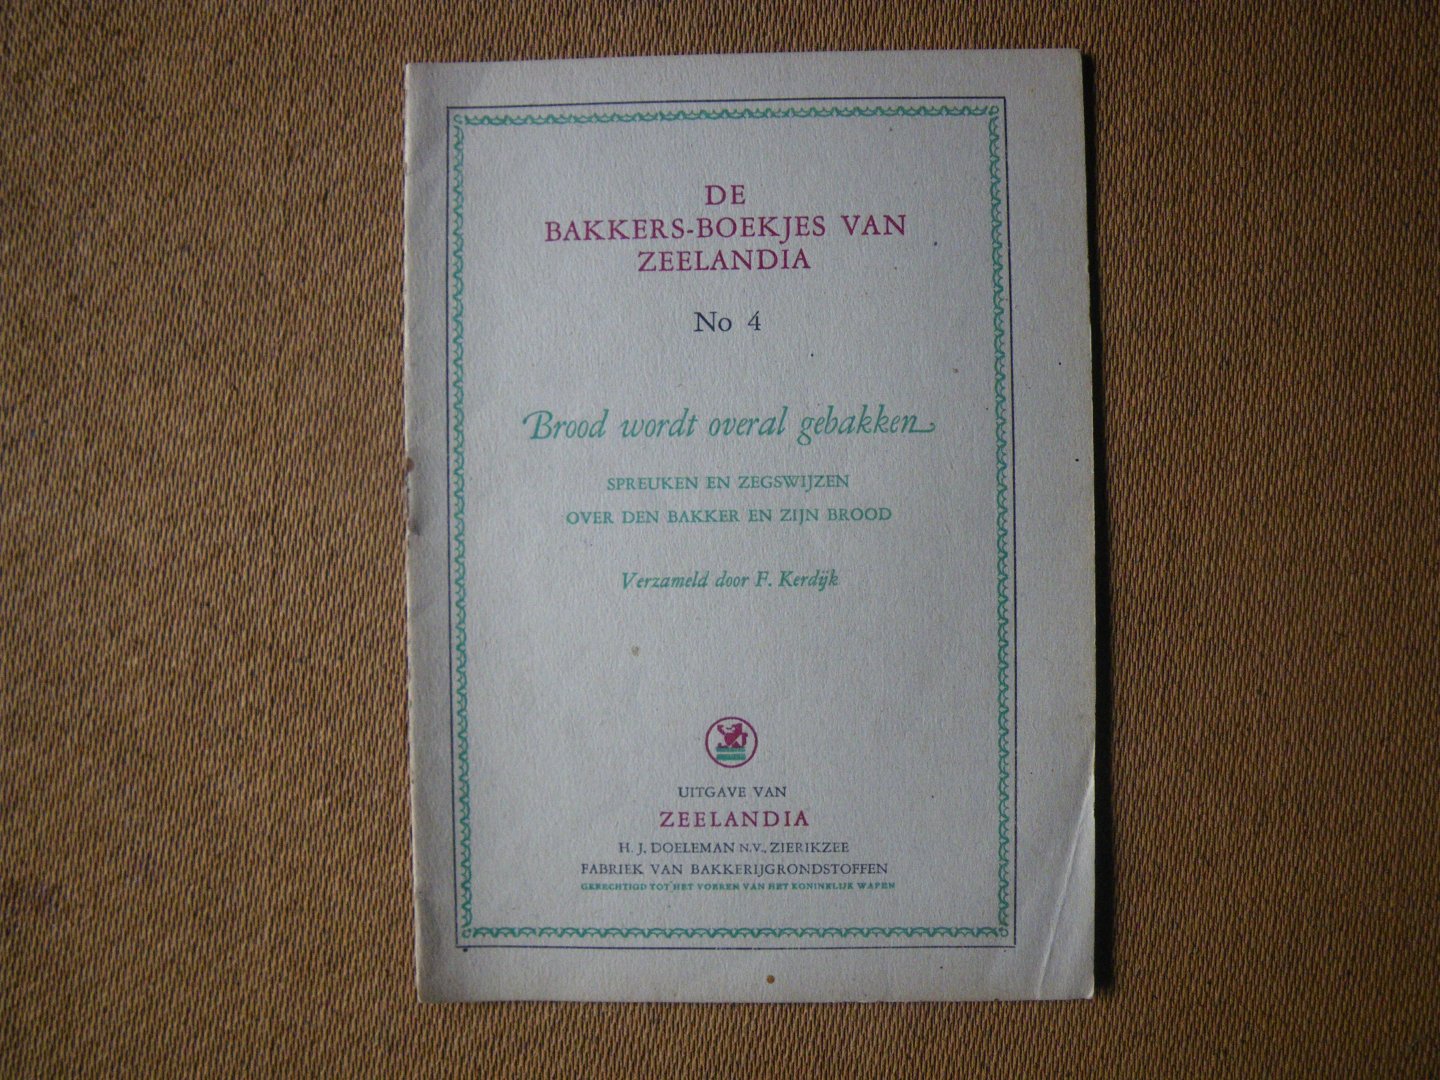 Kerdijk F. - Brood wordt overal gebakken.. over spreuken en zegswijzen over den bakker en zijn brood - de bakkersboekjes van Zeelandia no.4-